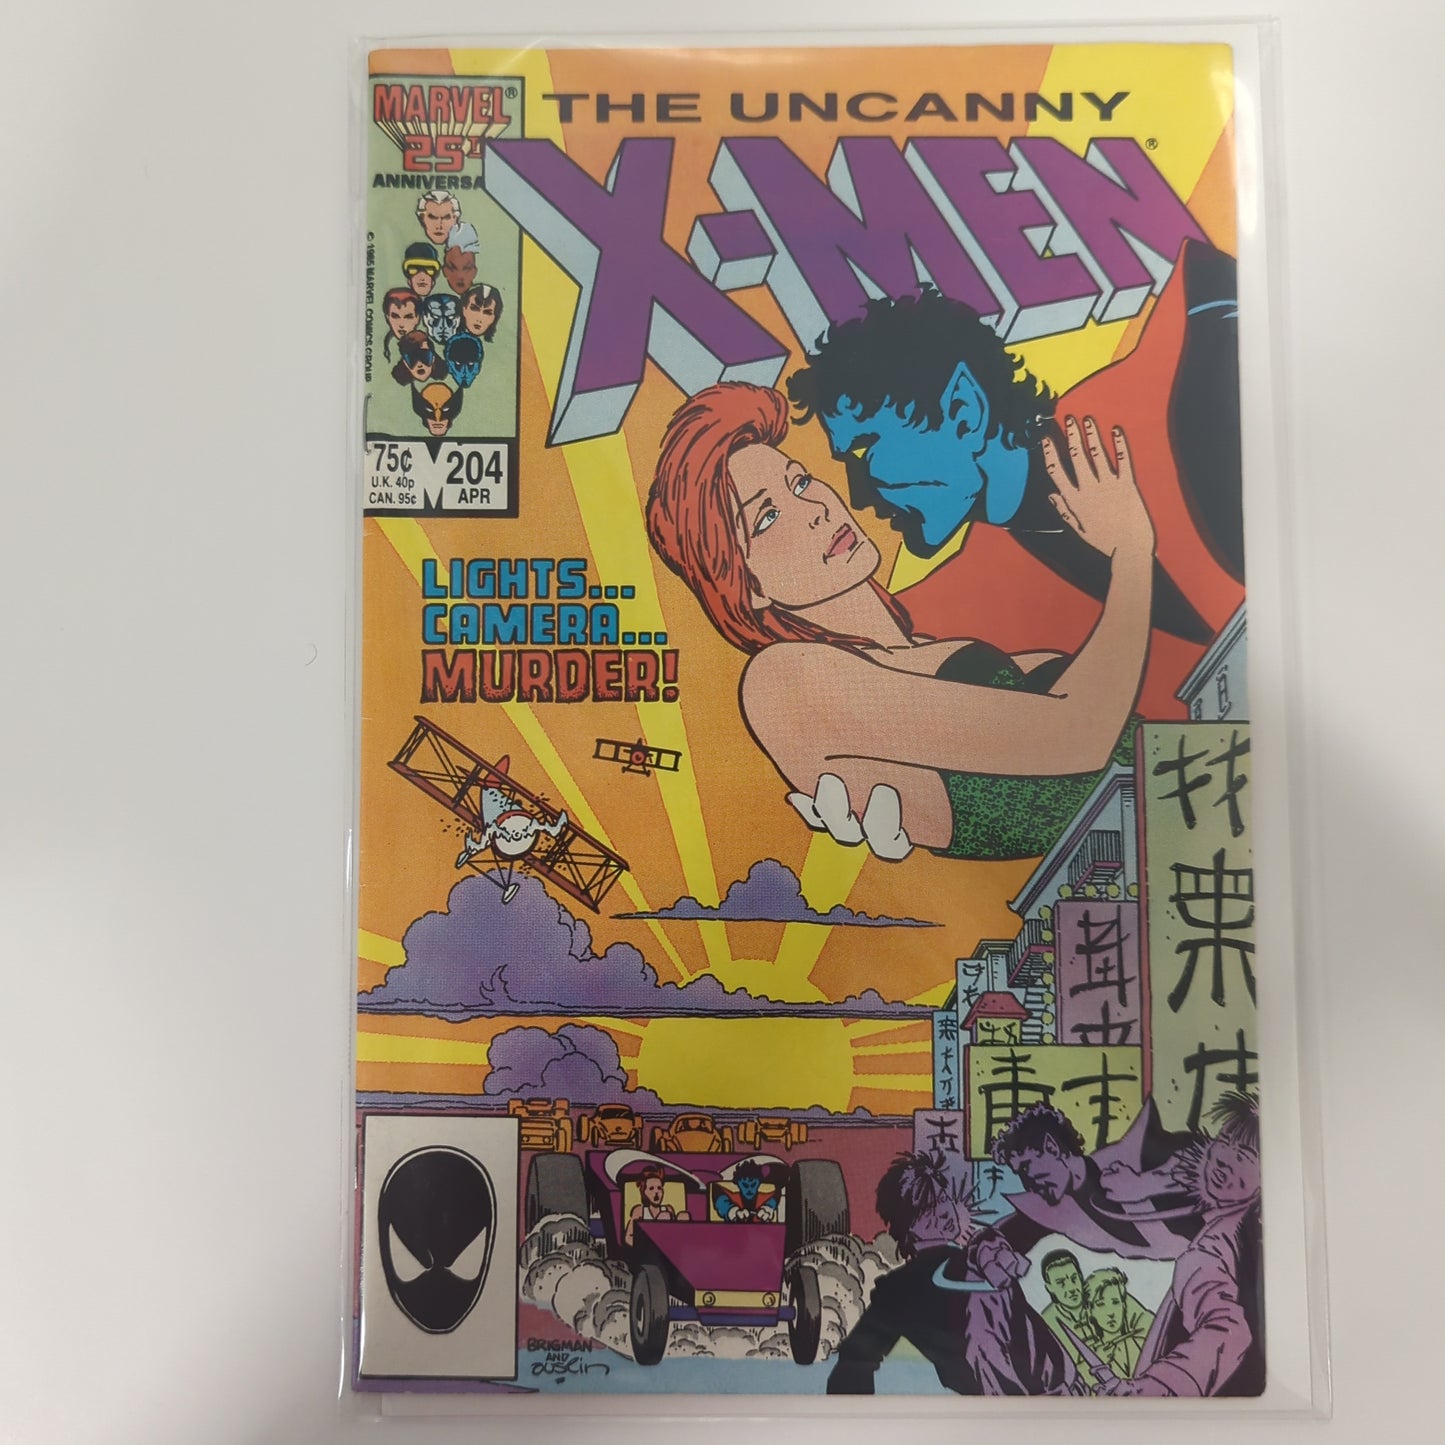 The Uncanny X-Men #204